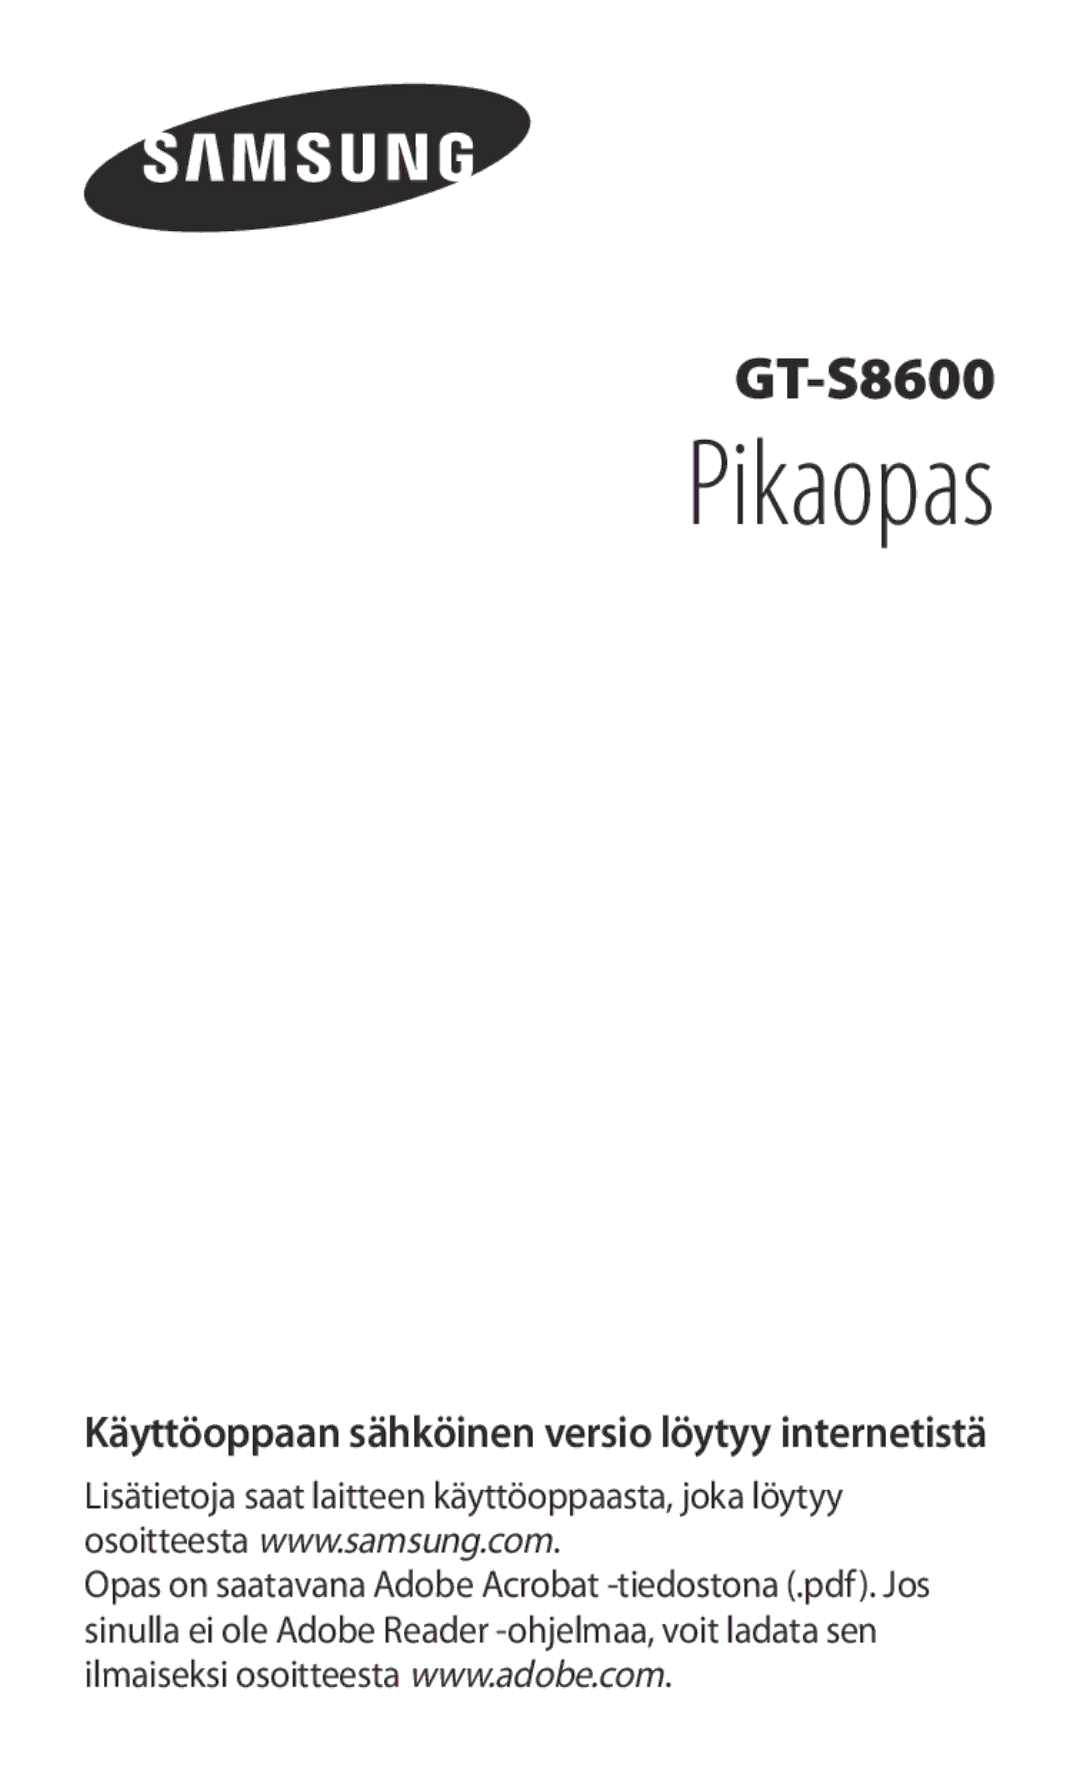 Samsung GT-S8600HKANEE manual Pikaopas, Käyttöoppaan sähköinen versio löytyy internetistä 